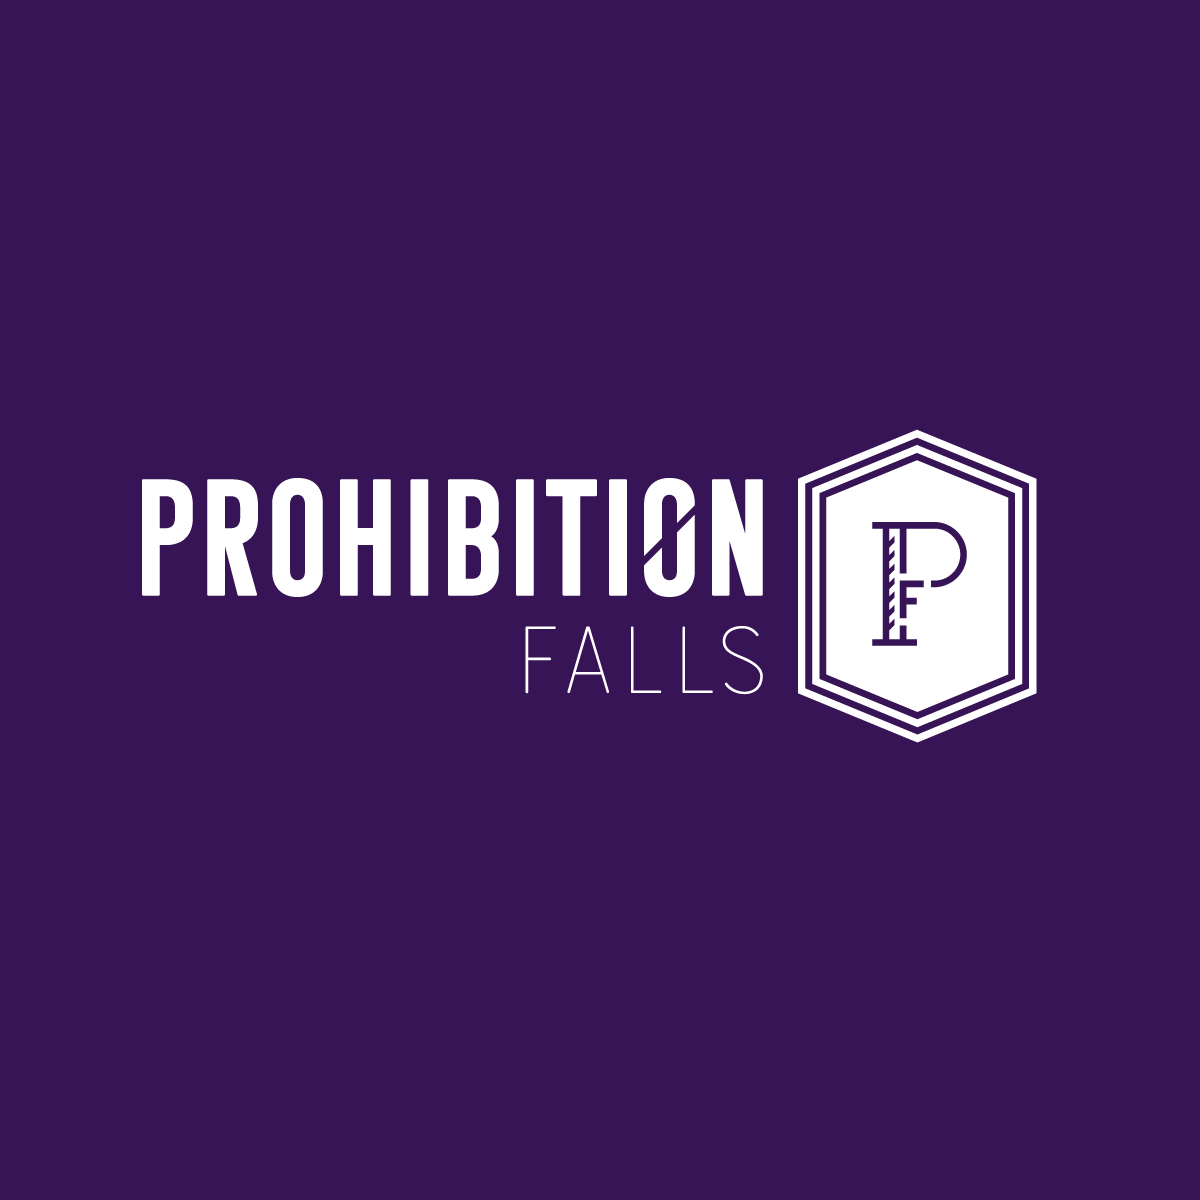 Prohibition Falls - Medical Marijuana Doctors - Cannabizme.com